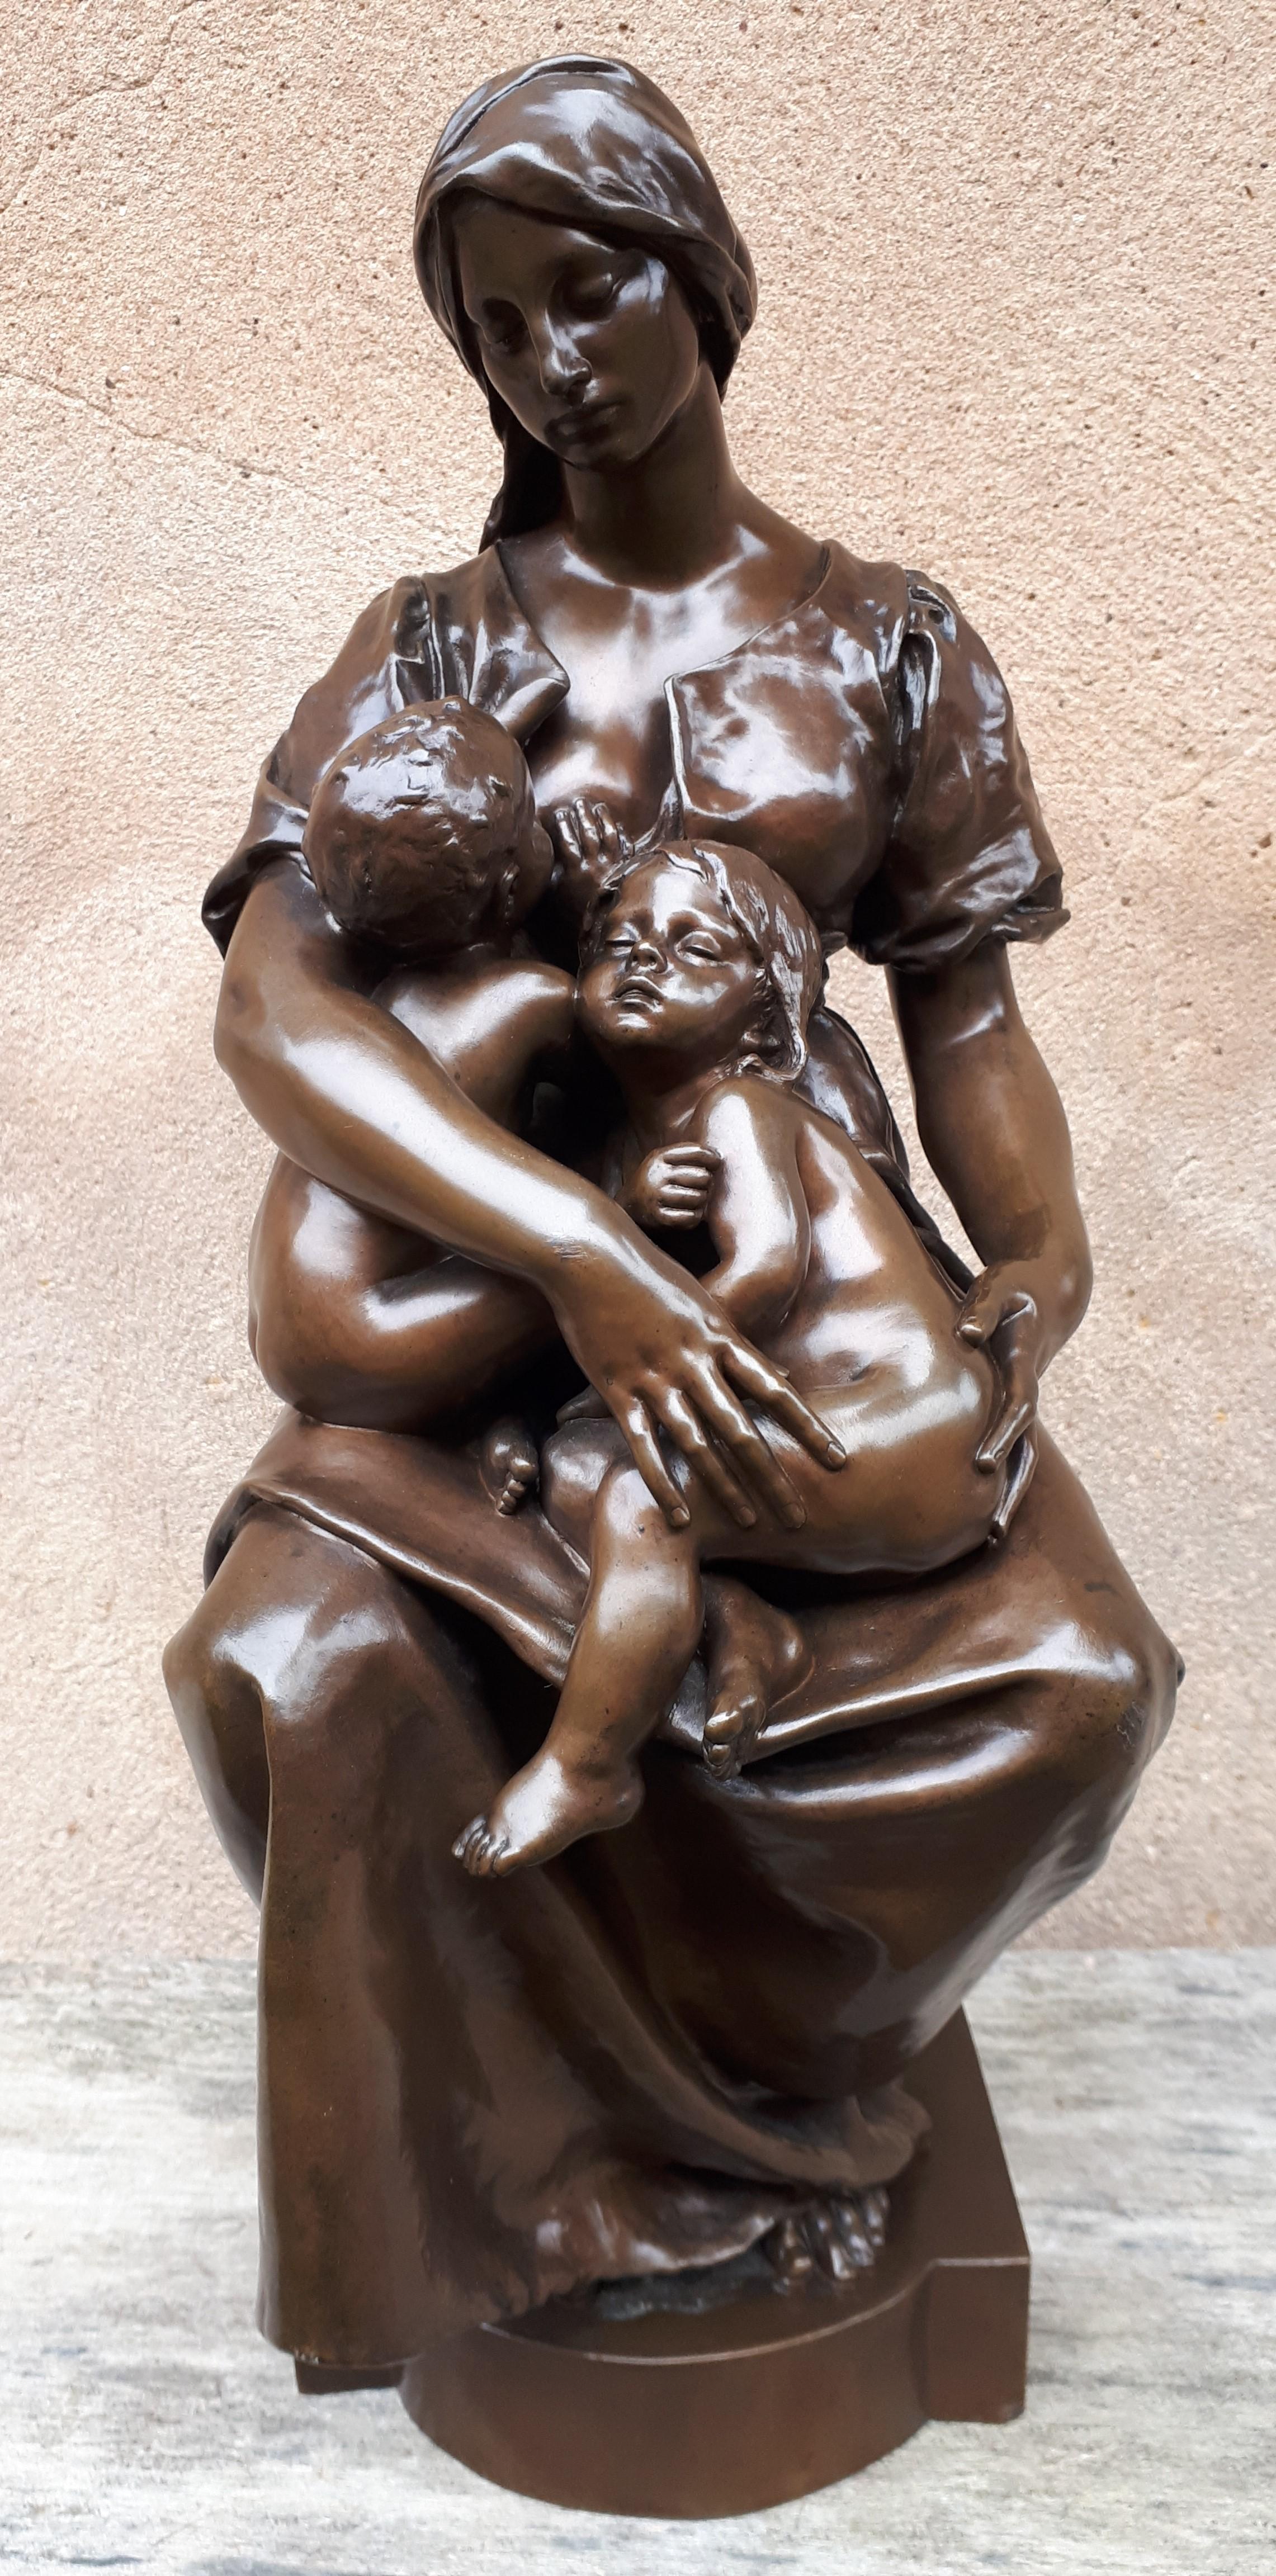 Magnifique composition pour cette sculpture en bronze à patine brune. La charité (tel est le nom de l'œuvre) est ici représentée sous la forme d'une jeune femme allaitant des nourrissons. Son regard baissé et ses mains soutenant délicatement les